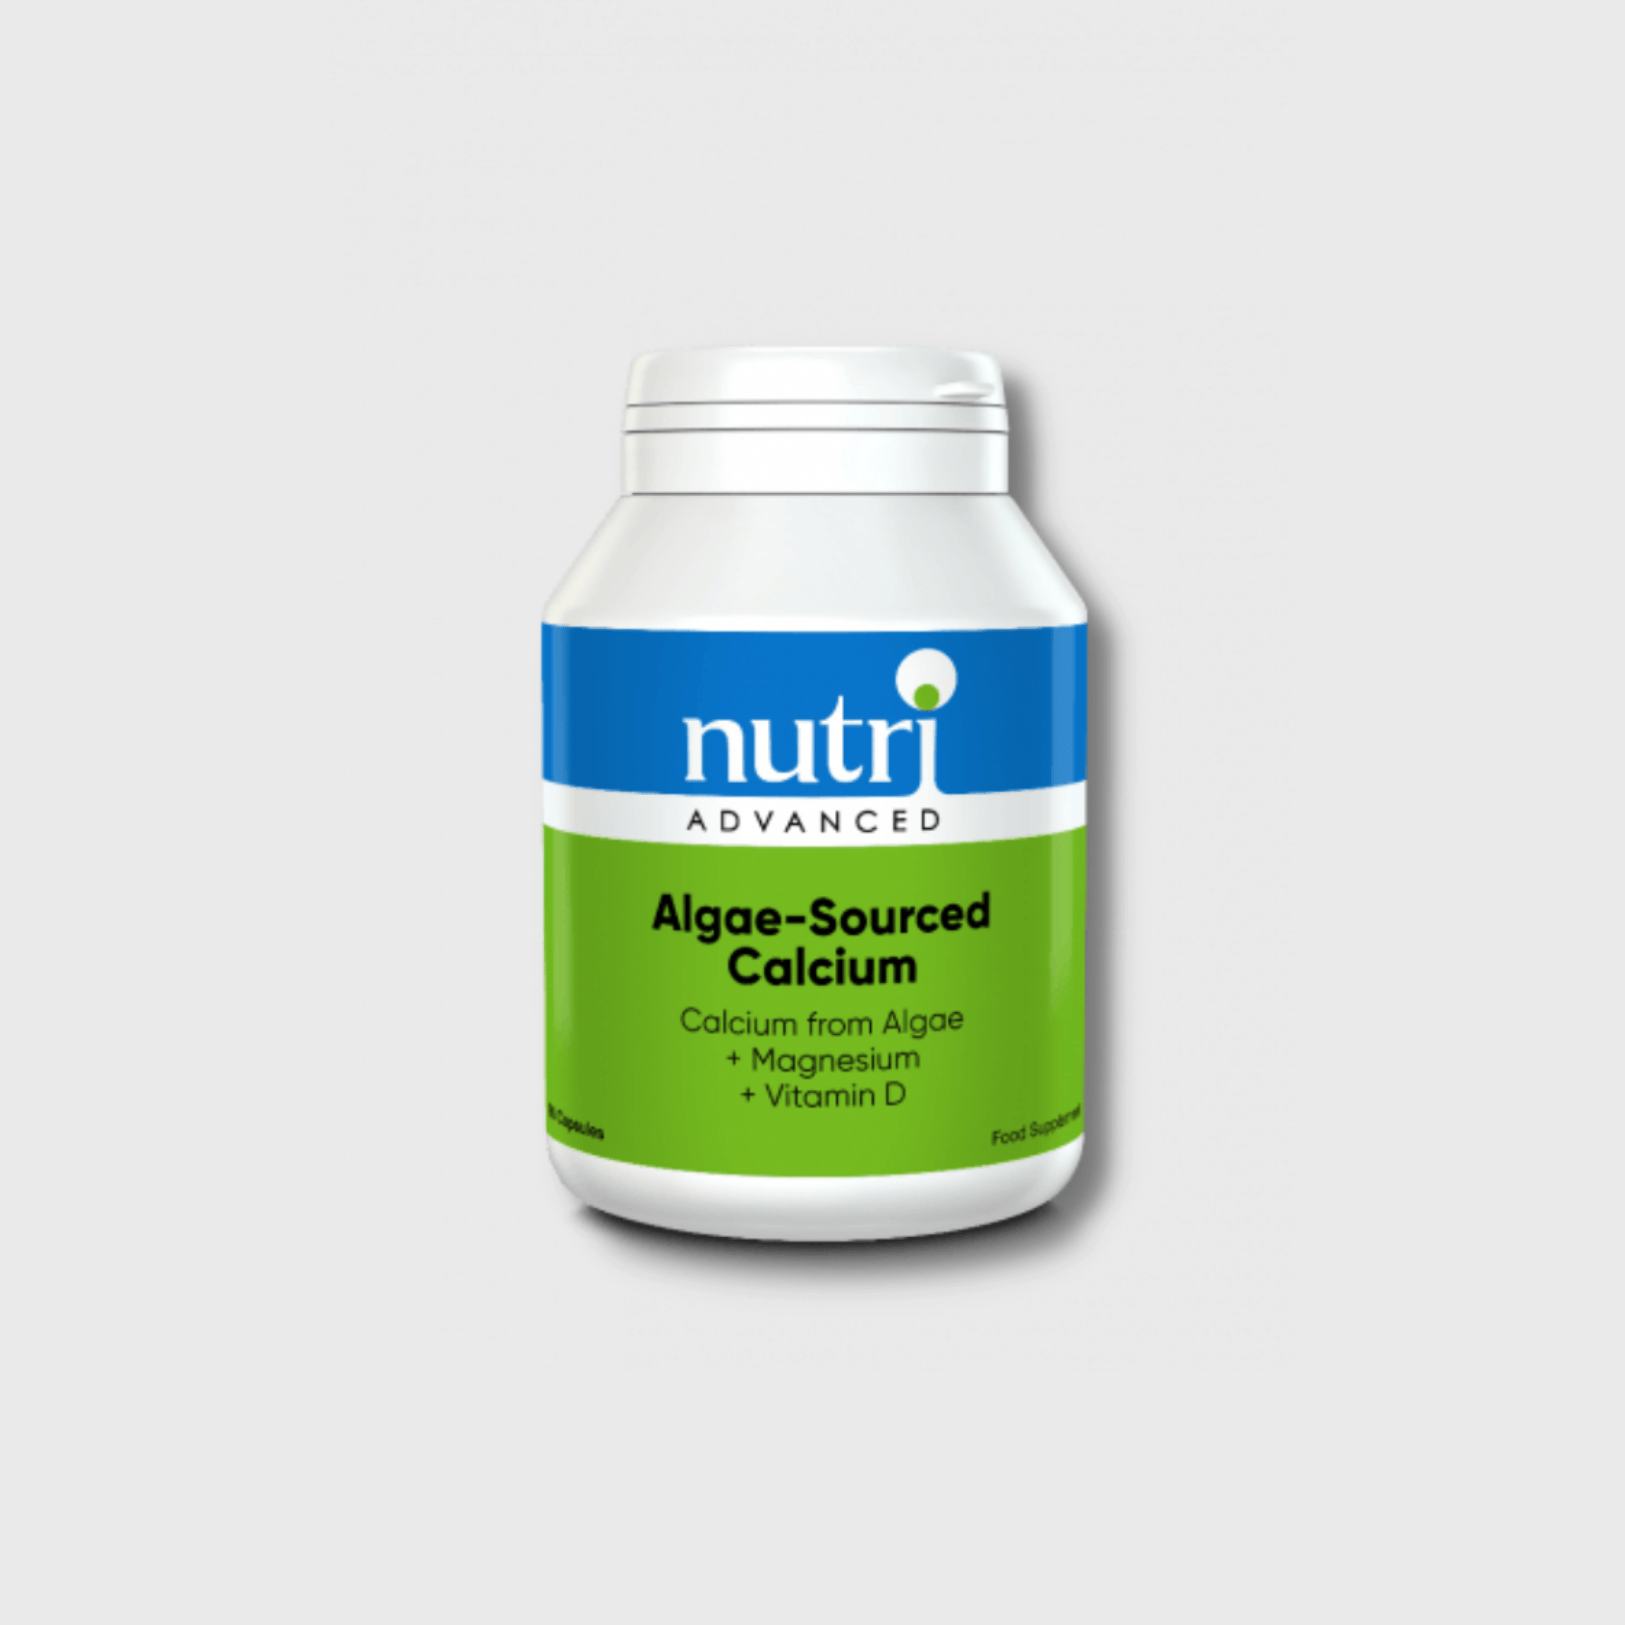 Algae-Sourced Calcium